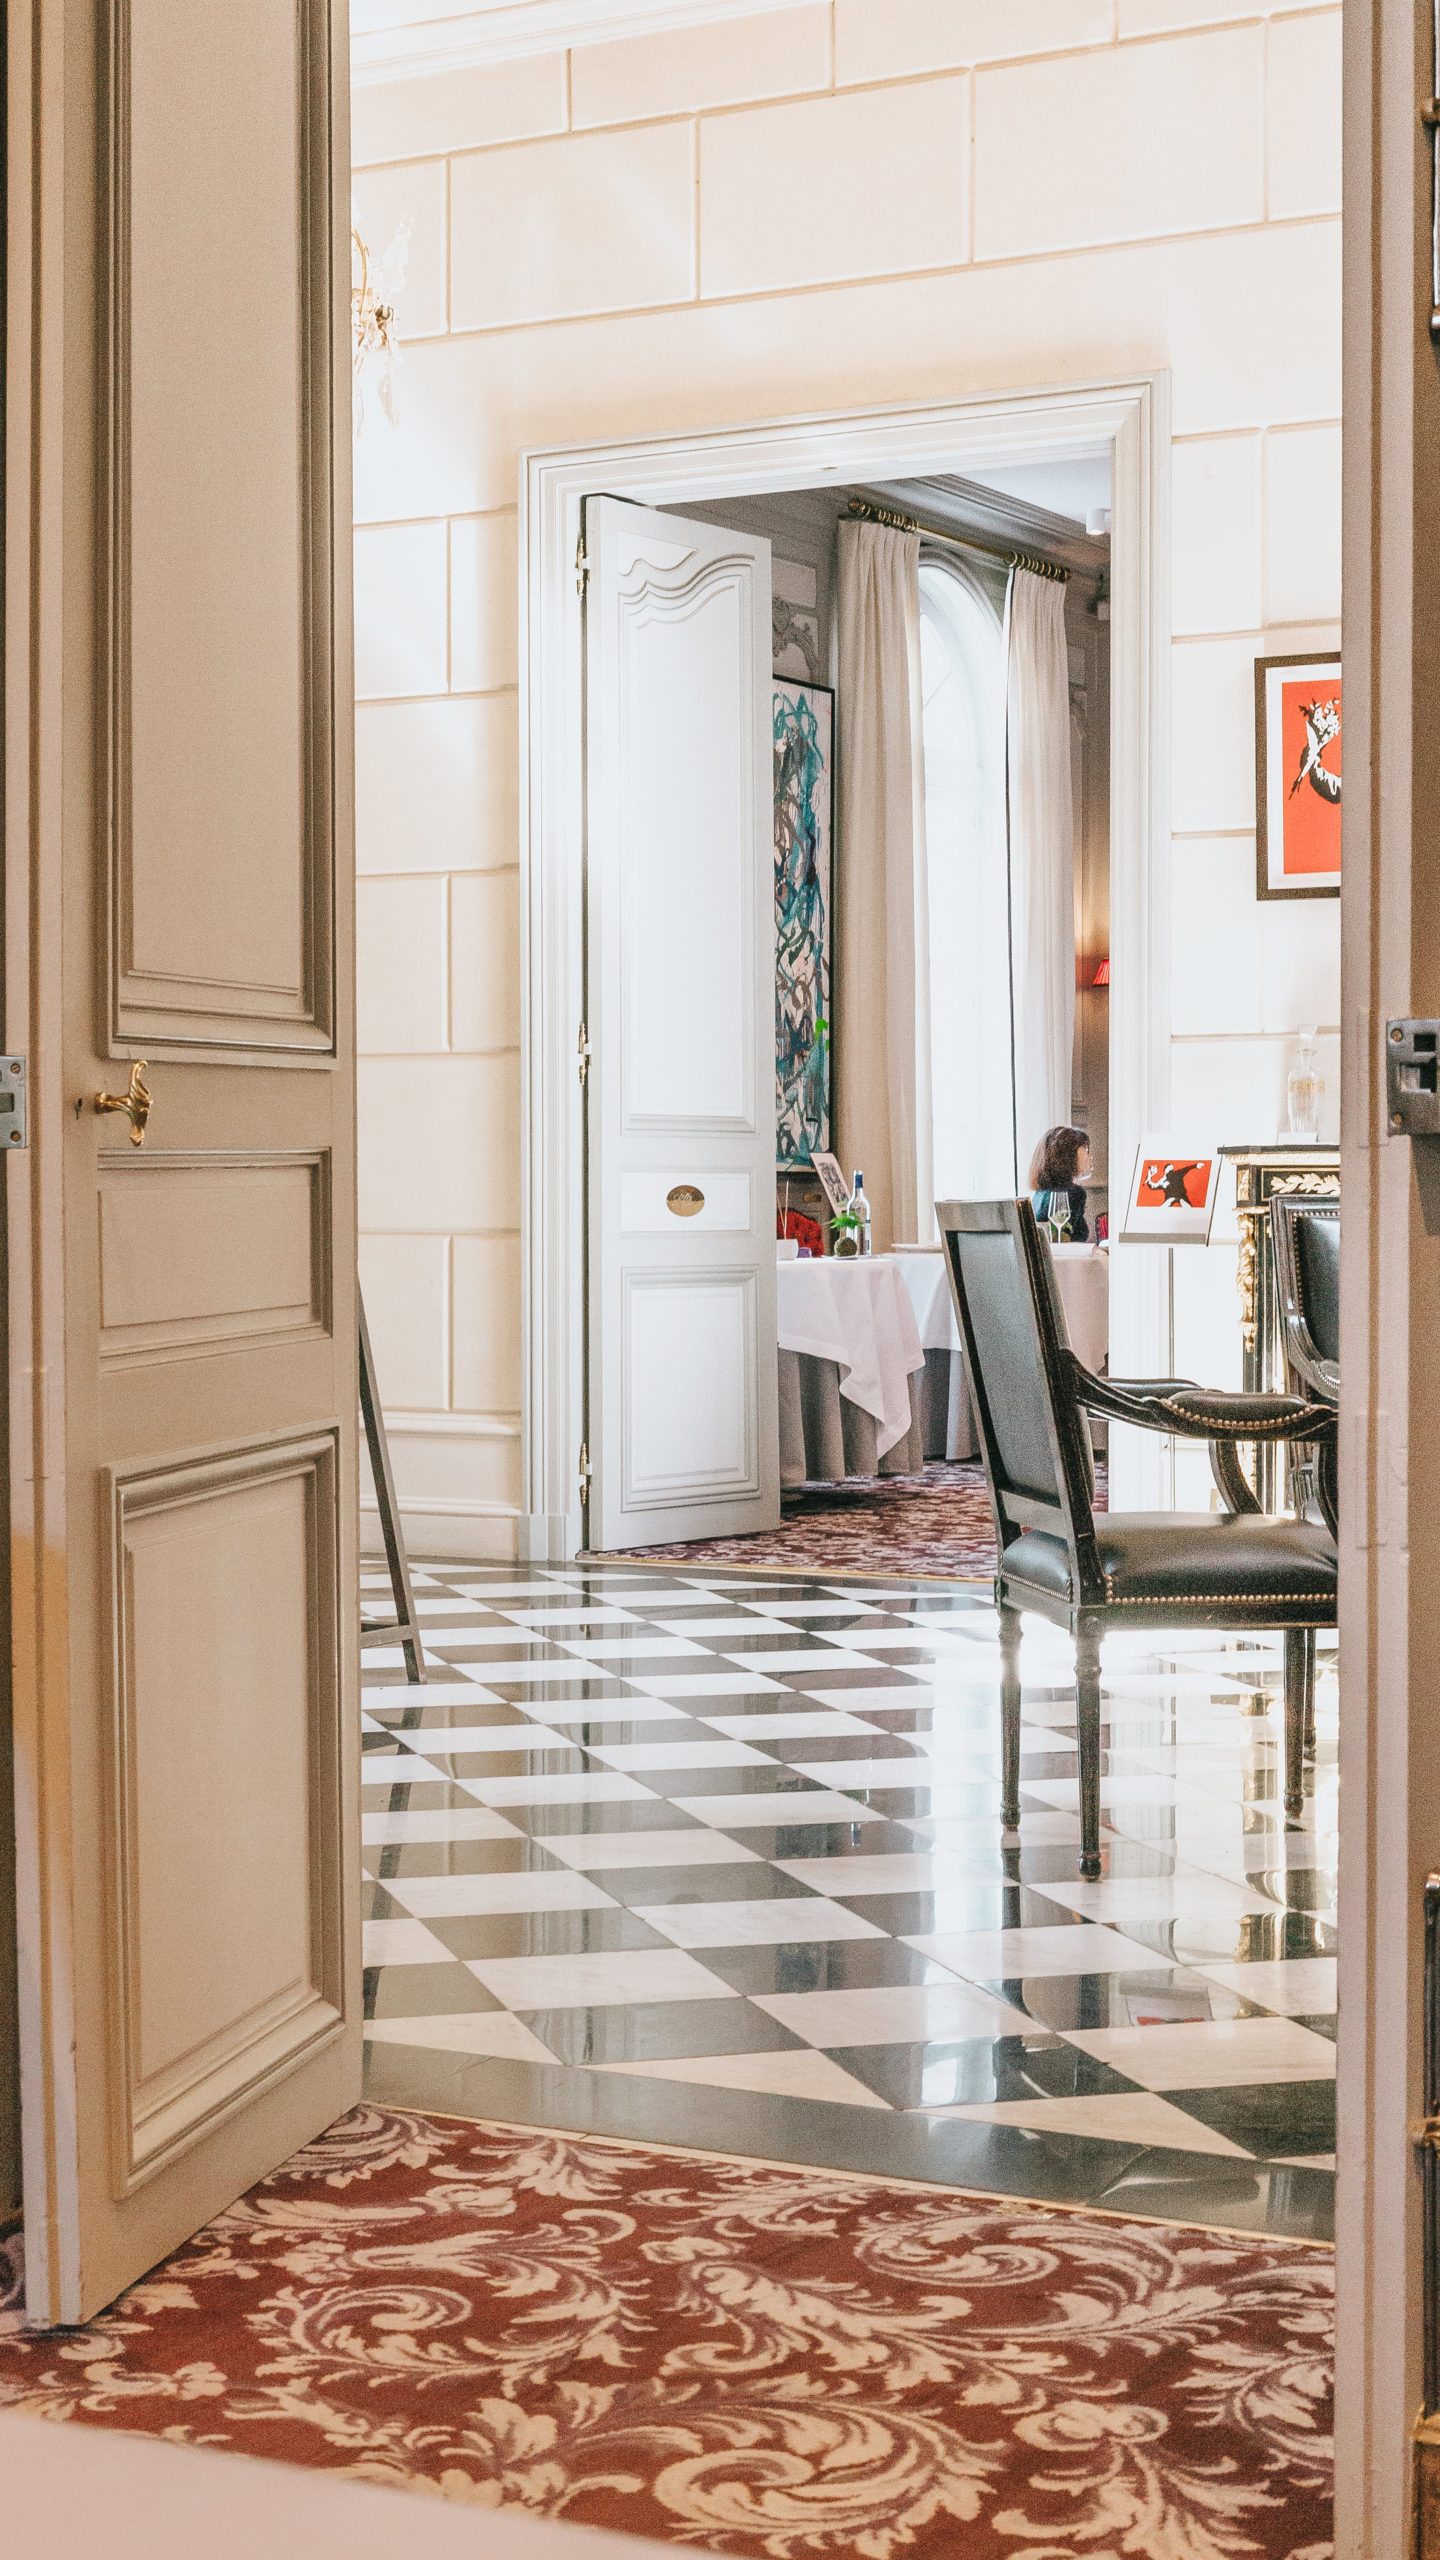 Grande Maison, Bernard Magrez, Pierre Gagnaire, 2 étoiles Michelin, hôtel de luxe. 